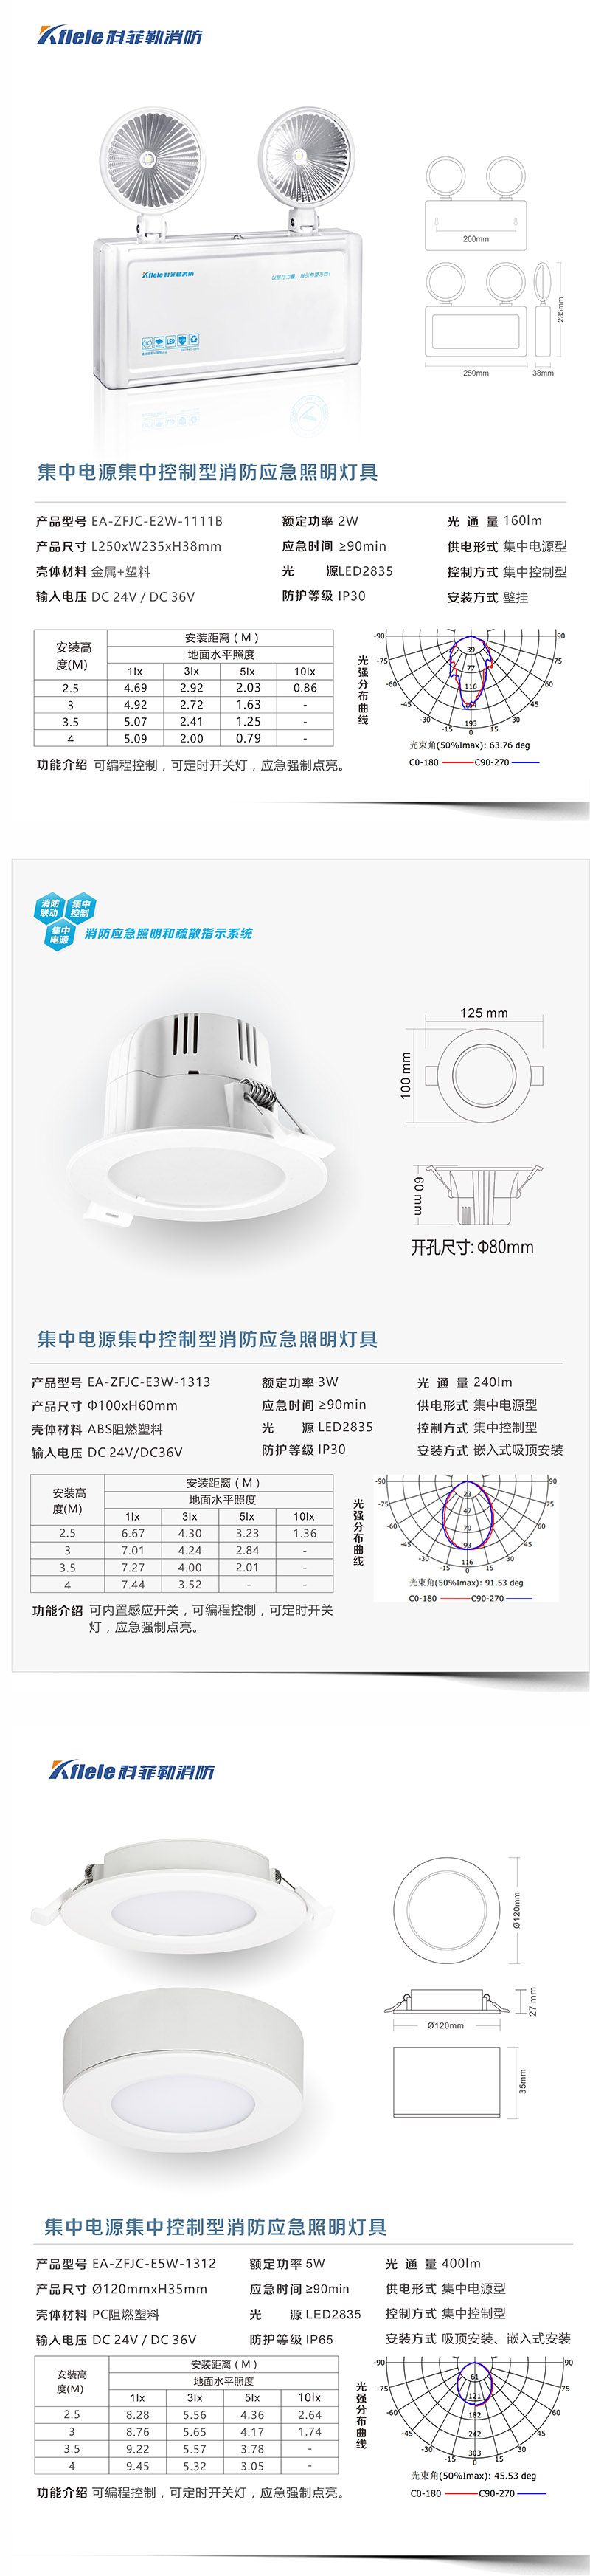 南京A型应急照明集中电源定制